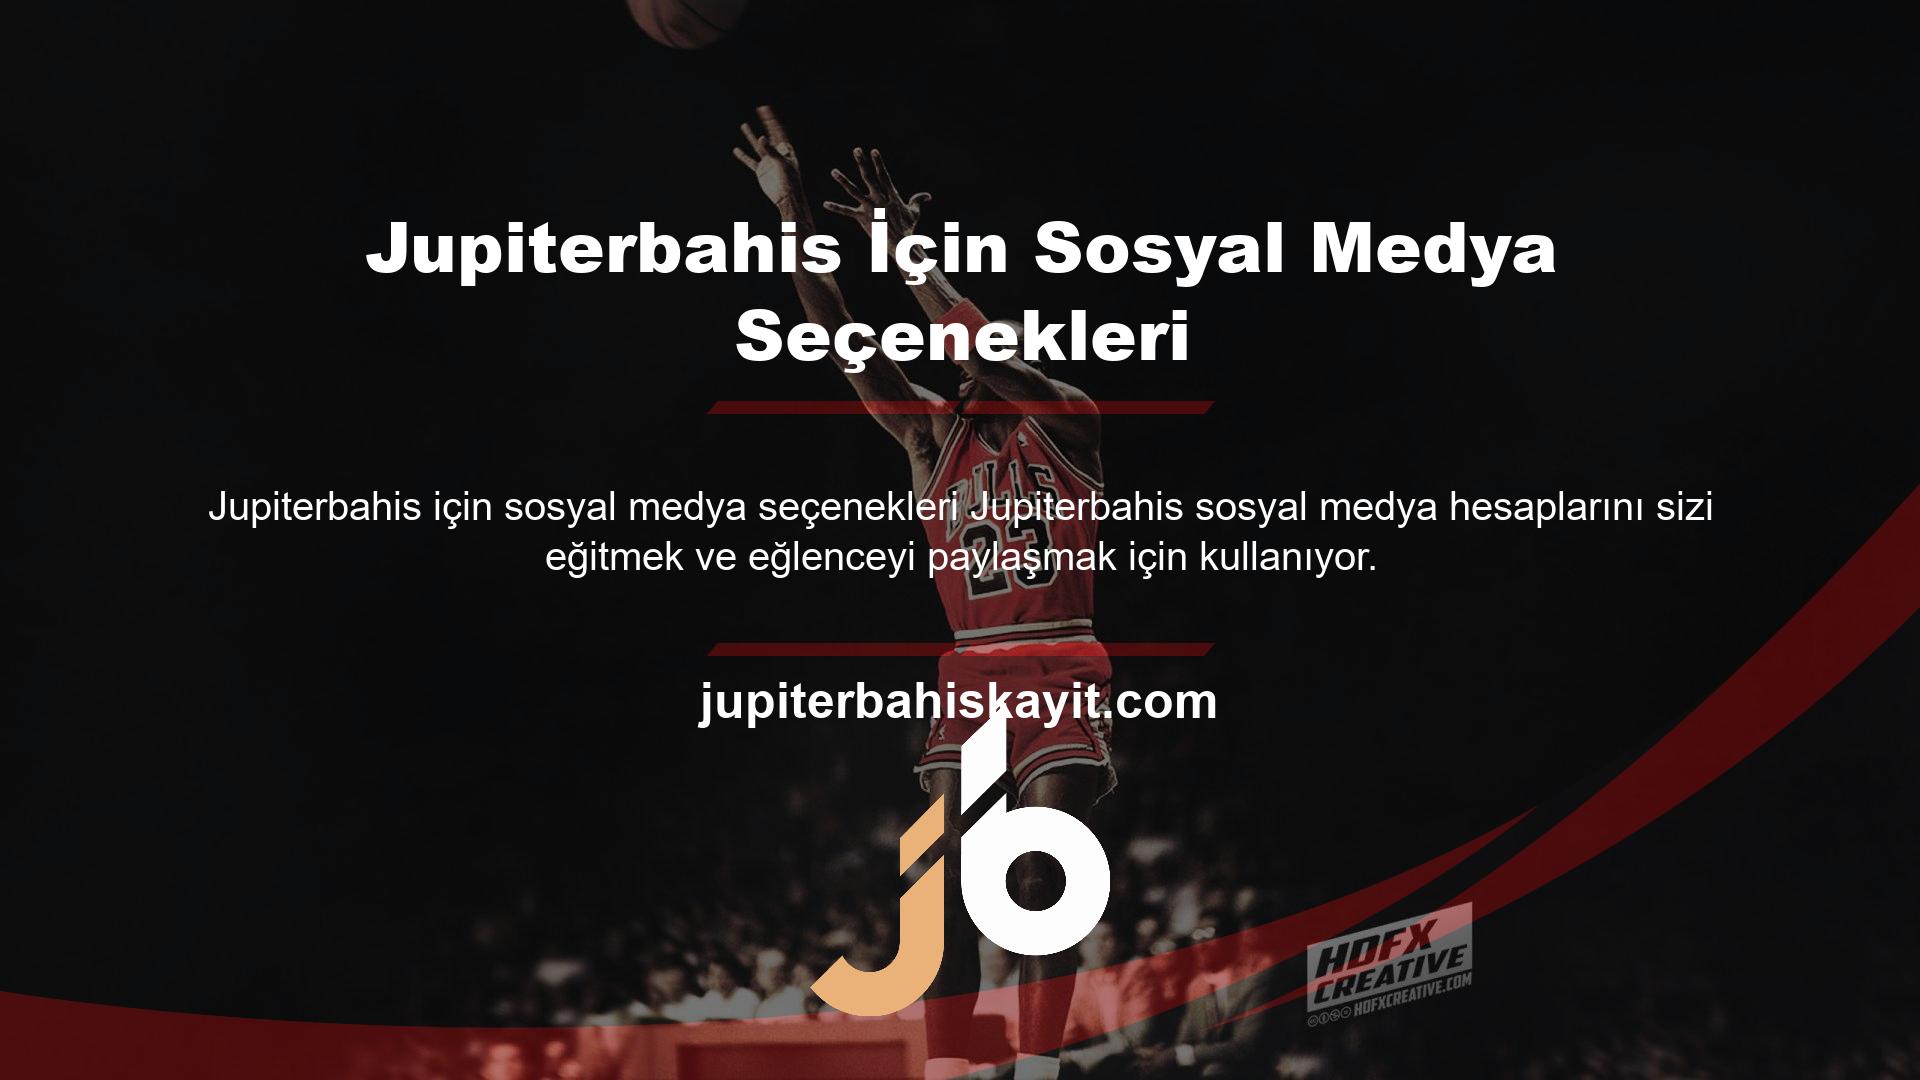 Kullanıcı adları için Twitter'da @Jupiterbahis, Instagram'da @Jupiterbahis ve Facebook'ta @Jupiterbahis bulabilirsiniz